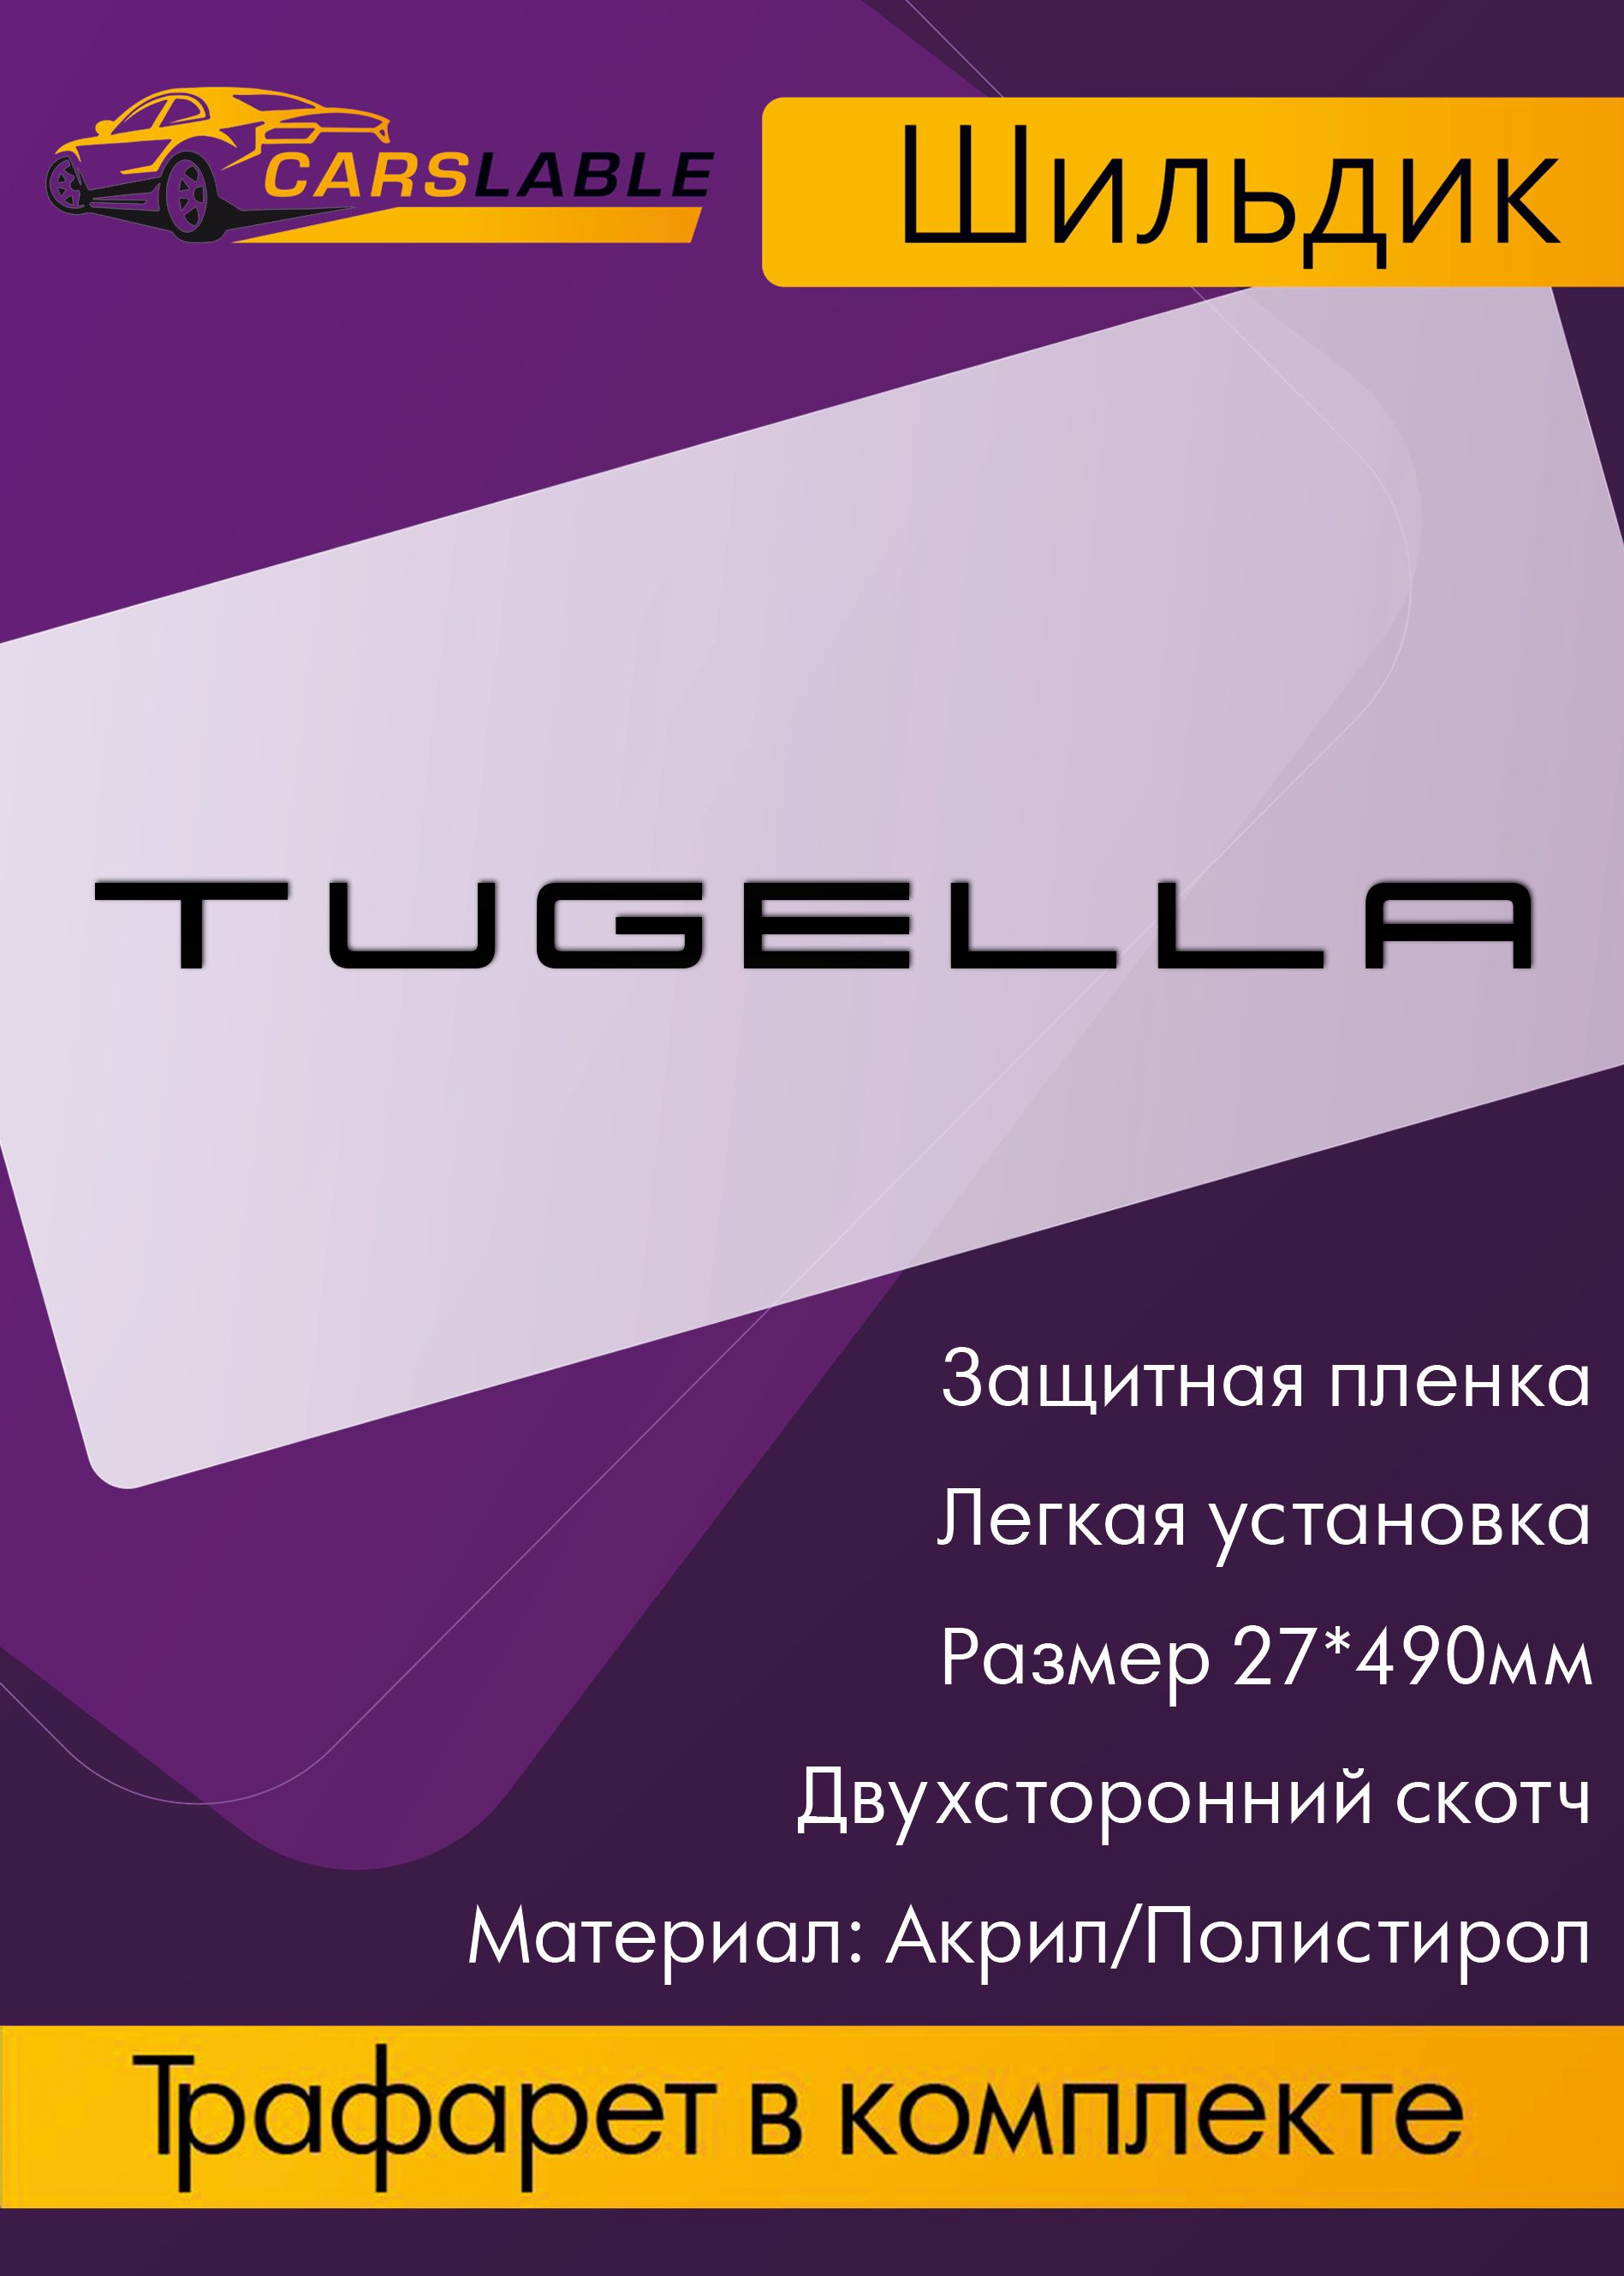 Орнамент(эмблема,шильдик)TUGELLAblack